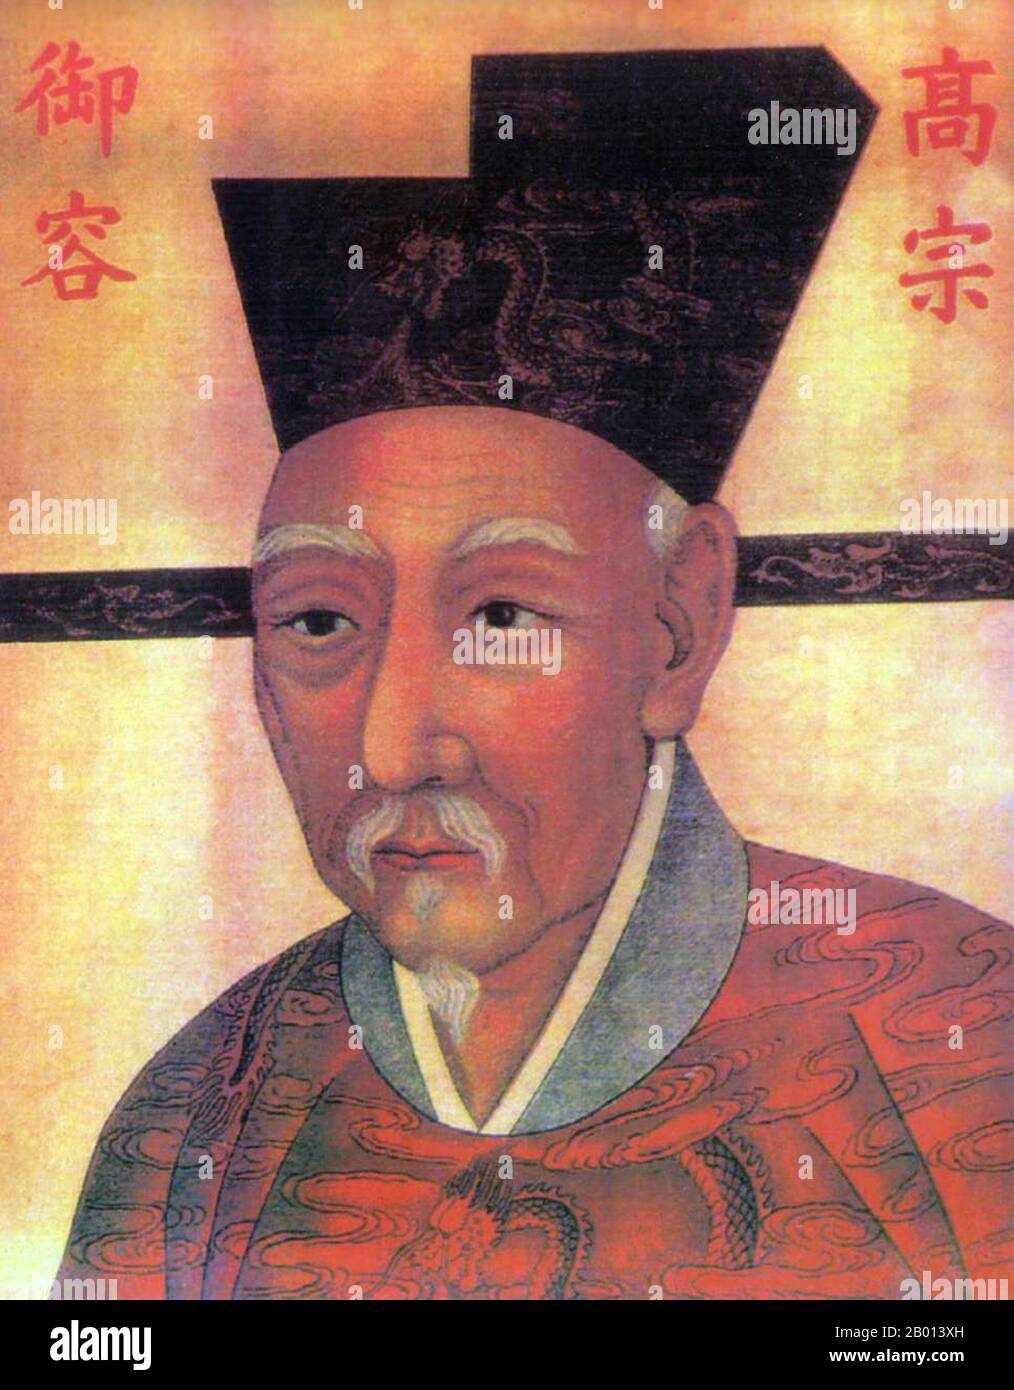 Cina: Imperatore Gaozong (12 giugno 1107 - 9 novembre 1187), decimo sovrano della dinastia Song (r. 1127-1129) e 1° sovrano della Dinastia Song Meridionale (r. 1129-1162). Pittura a scorrimento sospesa, c. 1127-1162. Gaozong, nome personale Zhao Gou e nome di cortesia Deji, fu il decimo imperatore della dinastia Northern Song. Dopo che gli imperatori di Qinzong e Huizong furono catturati dal Giurchen, divenne l'imperatore e fondò l'impero della Song Meridionale a Lin'an (Hangzhou moderna). Durante il suo regno, Jurchens spesso attaccò l'impero della Song Meridionale. Foto Stock